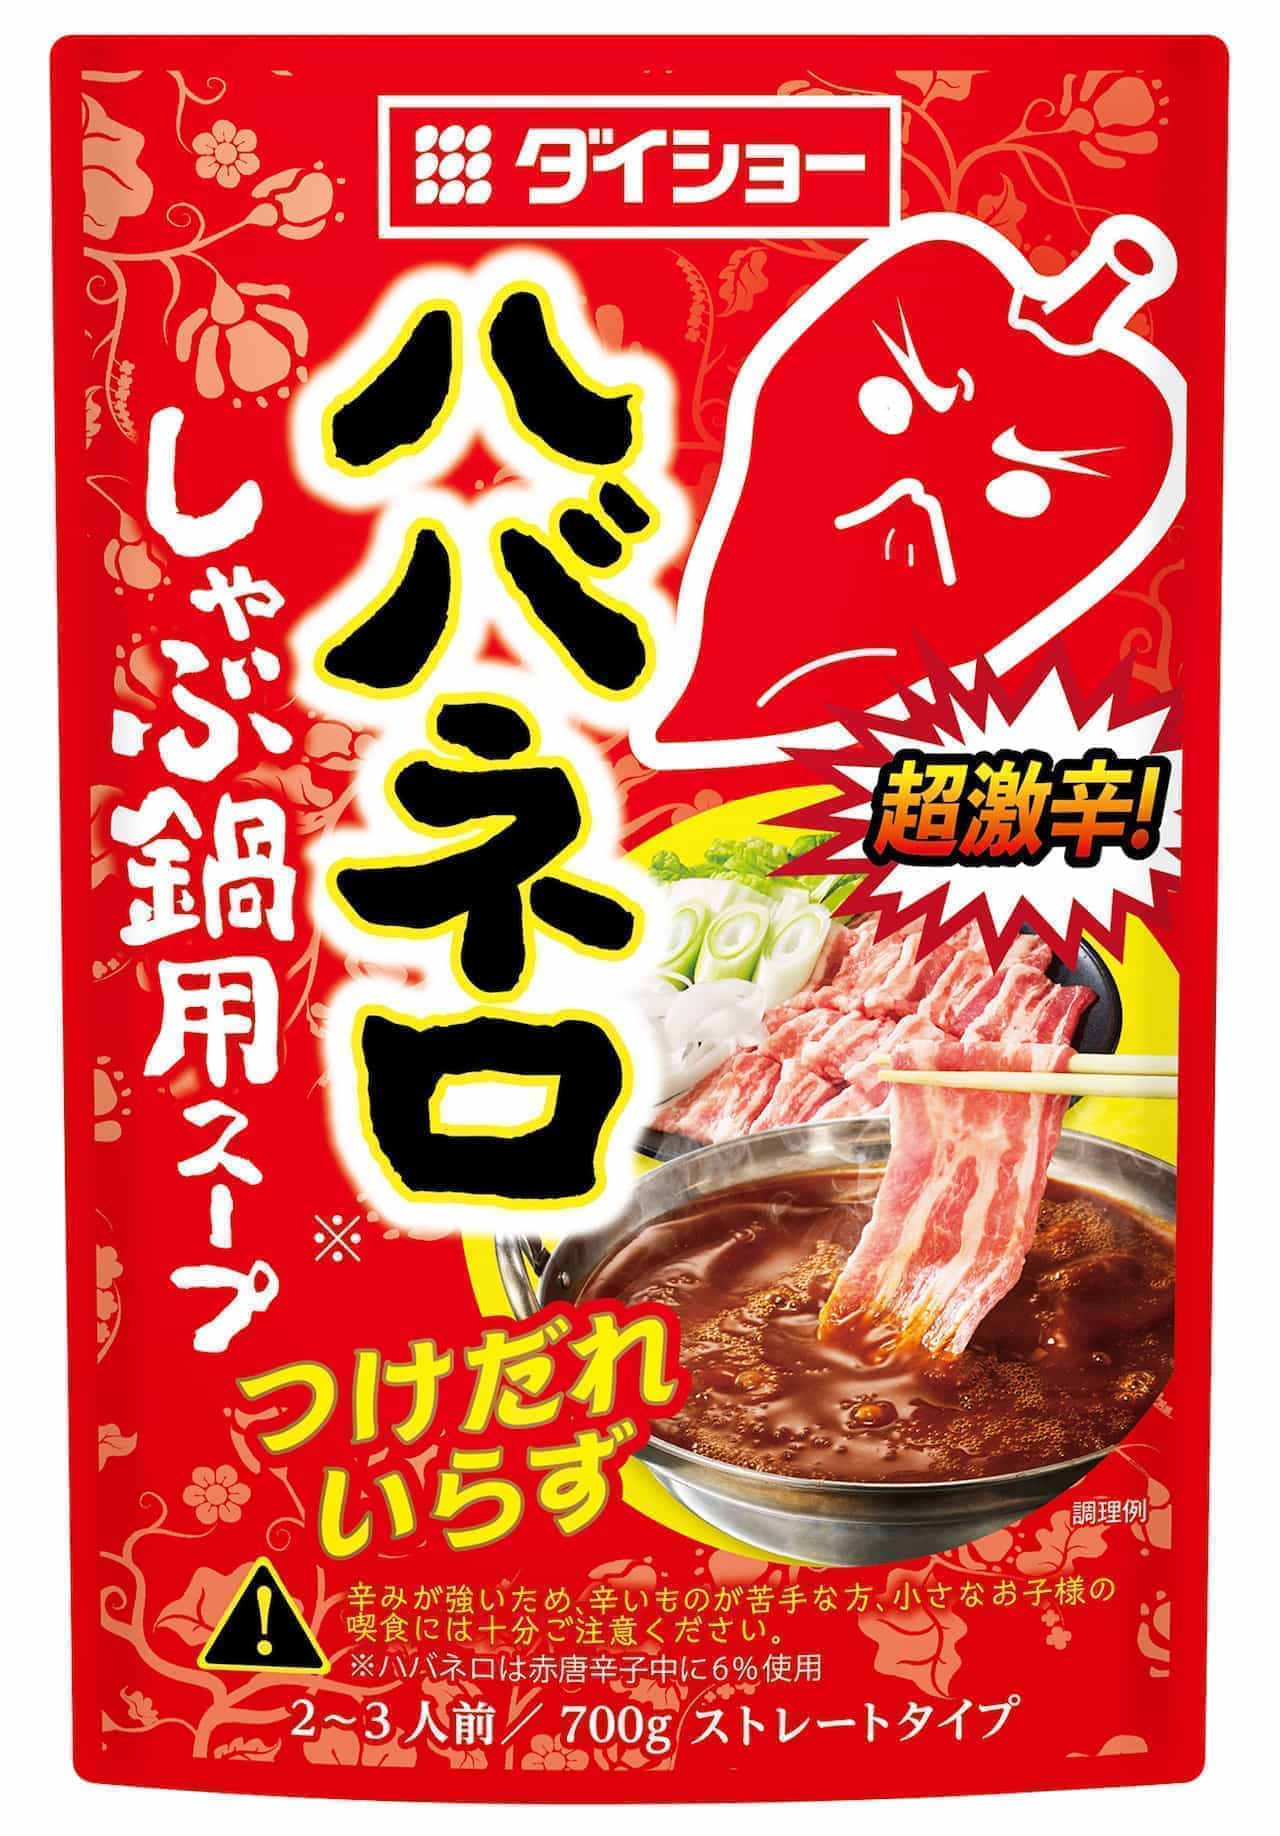 Addictive taste "Habanero shabu-shabu soup"